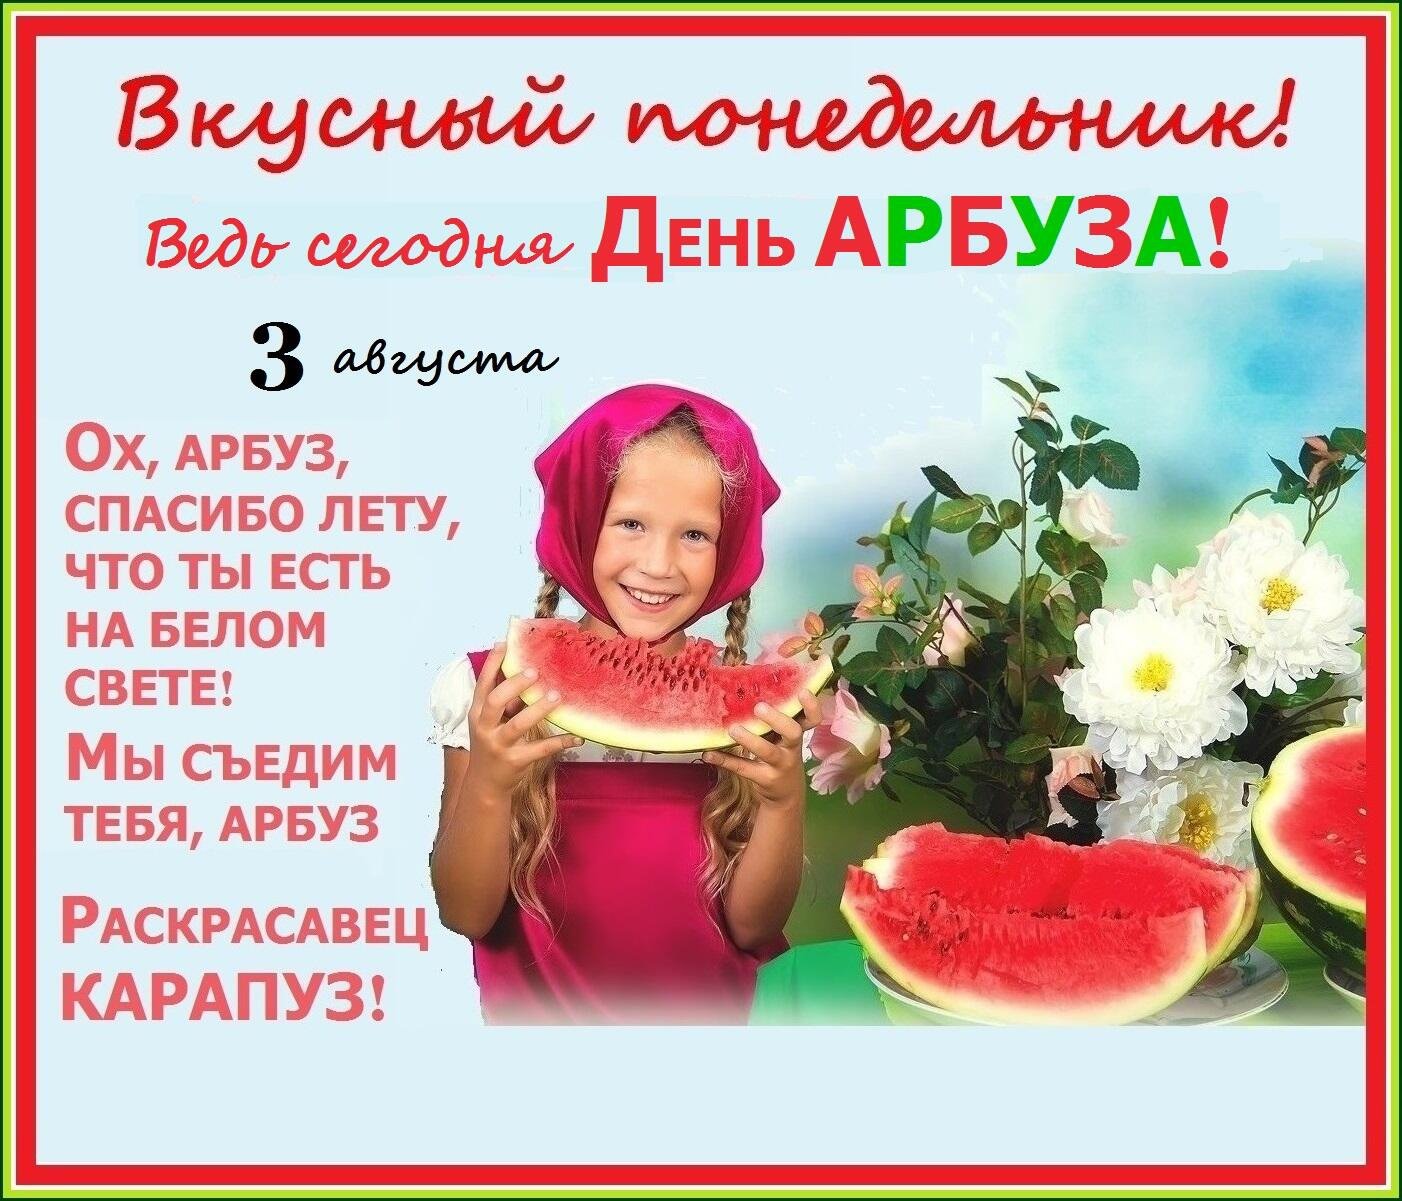 3 августа неделя. Международный день арбуза. День арбуза 3 августа. День арбуза праздник. С днем арбуза поздравления.